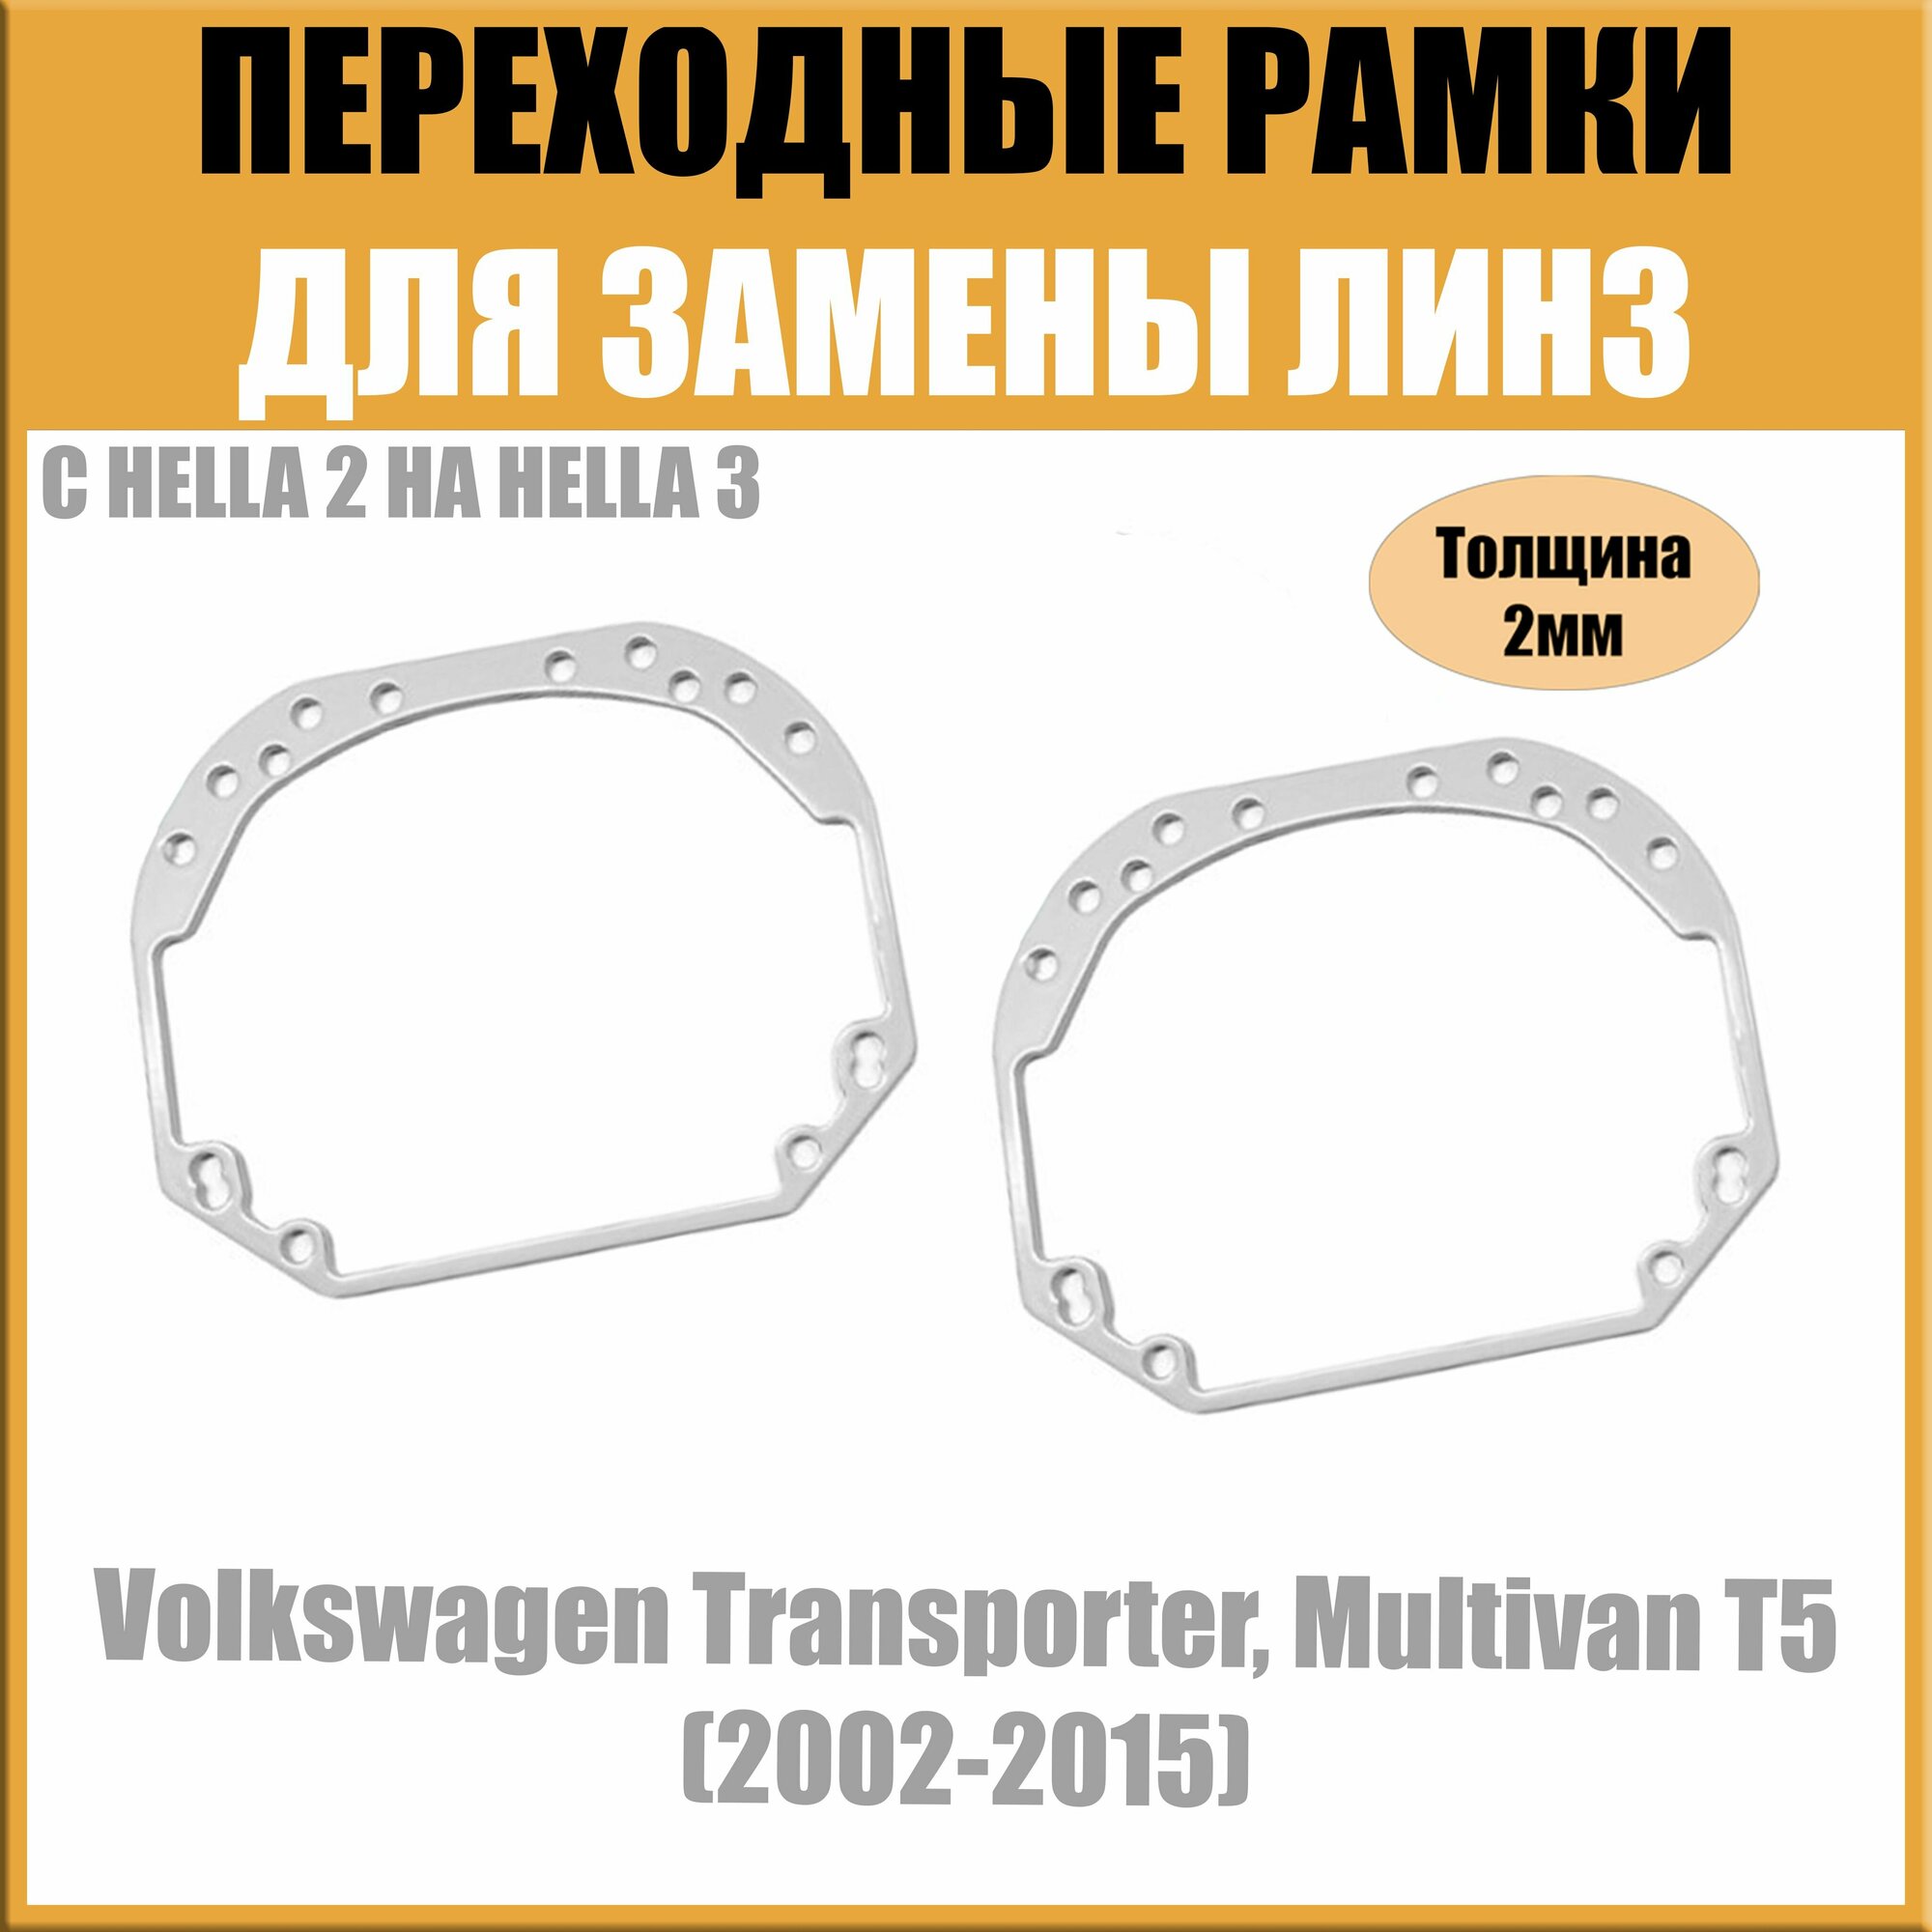 Переходные рамки для линз №1 на Volkswagen Transporter Multivan T5 (2002-2015) под модуль Hella 3R/Hella 3 (Комплект 2шт)